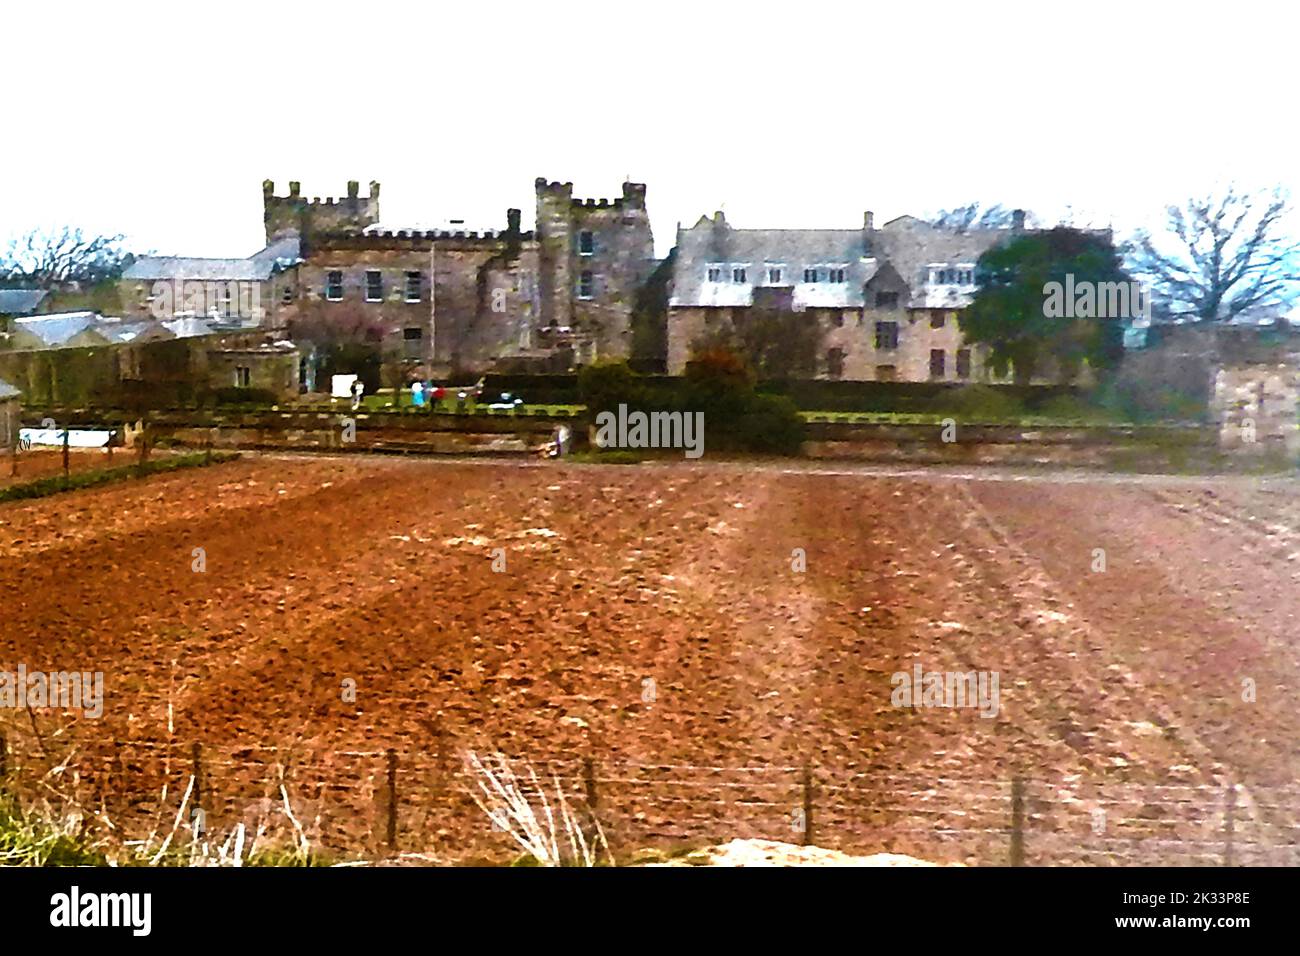 Un vieux cliché du château de Sneaton, le parc du château, Whitby, Yorkshire UK, rarement photographié, pris avant la construction de la nouvelle propriété. Le château, un ancien manoir très étendu, appartenait autrefois à James Wilson qui avait vendu sa plantation de sucre et 200 esclaves pour se déplacer à Whitby Banque D'Images